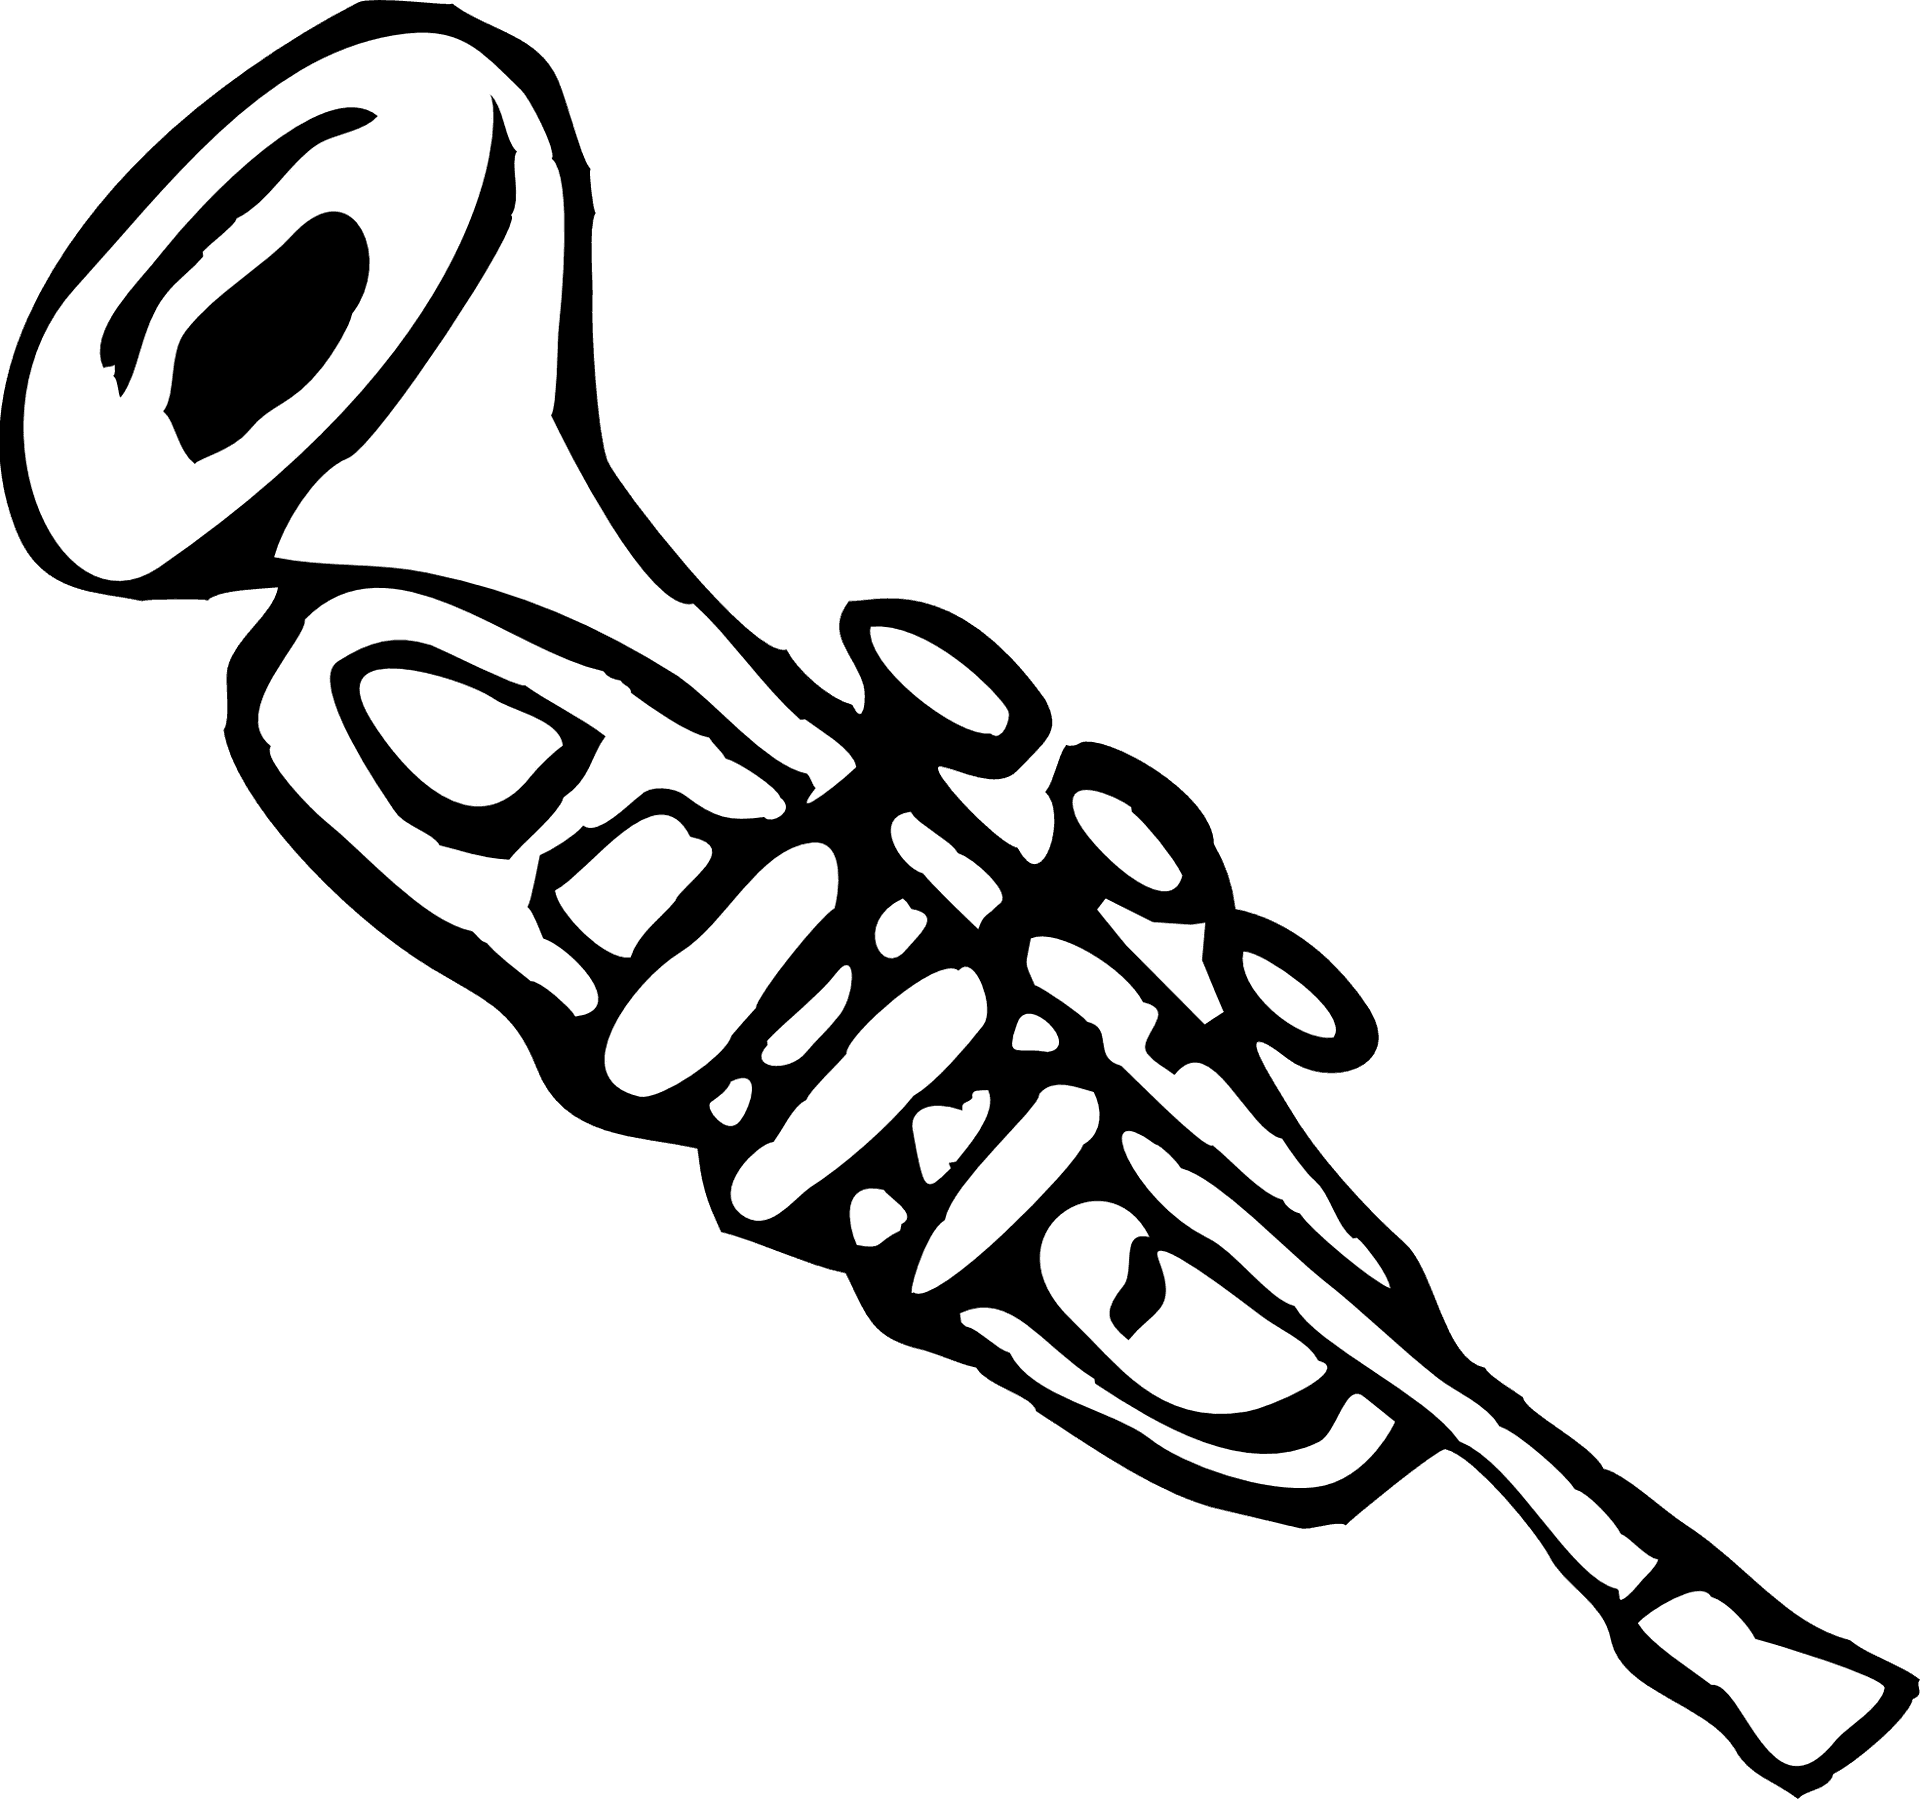 Trumpet Vector Illustration PNG image